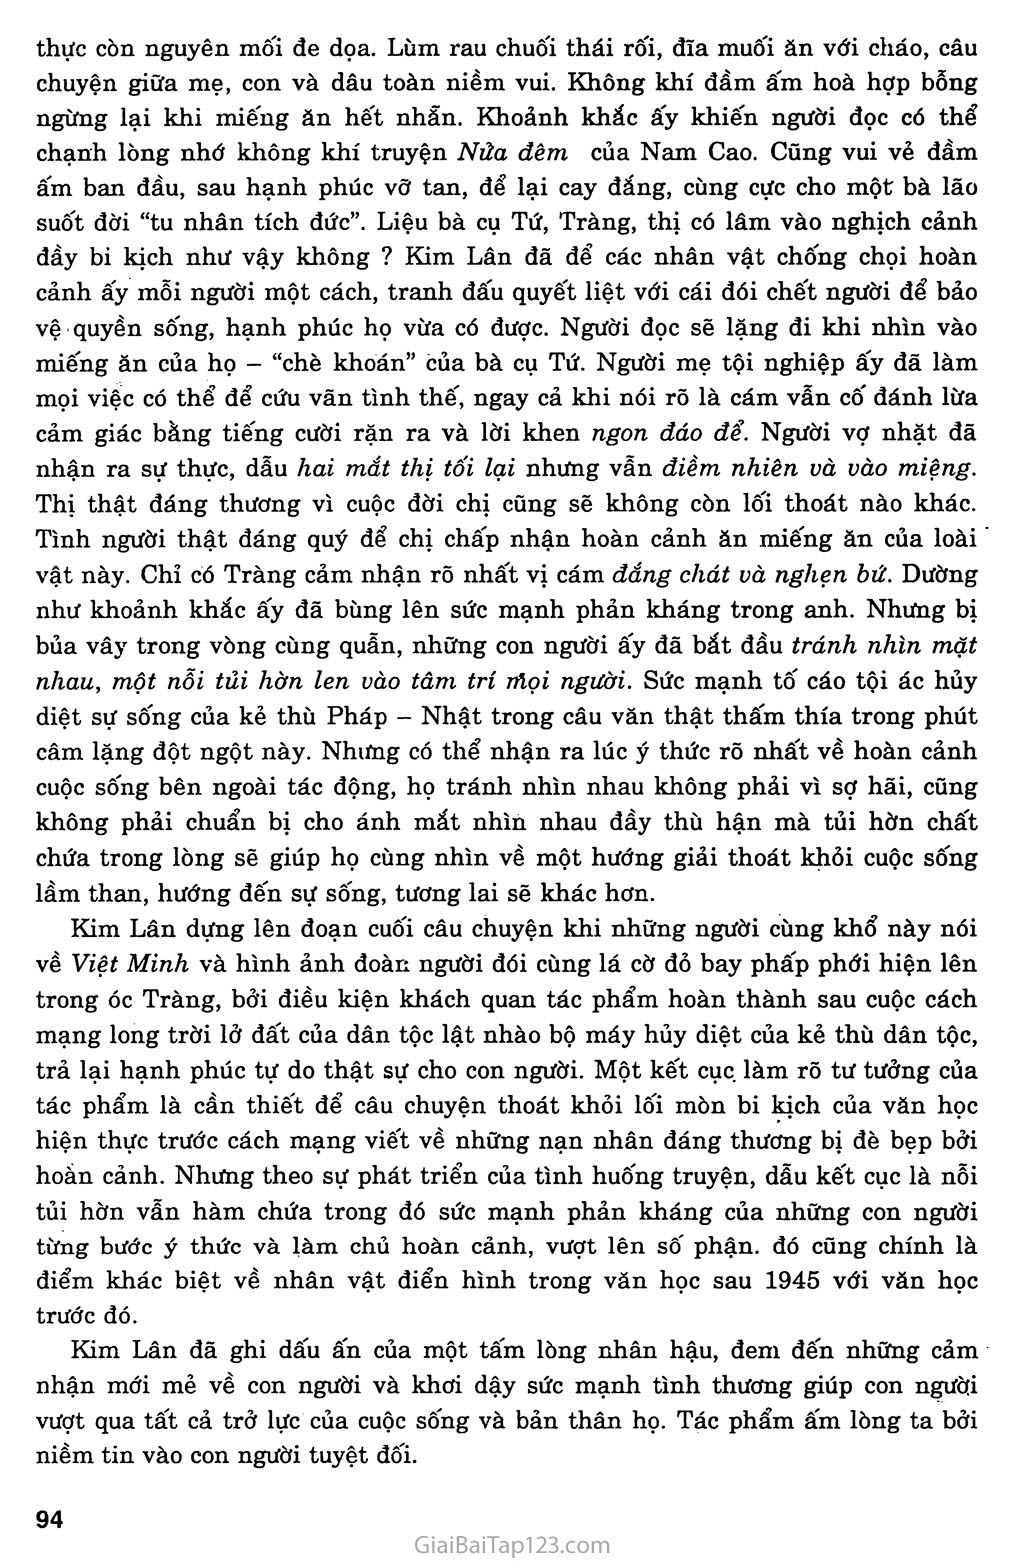 Vợ nhặt (Kim Lân, 1955) trang 14